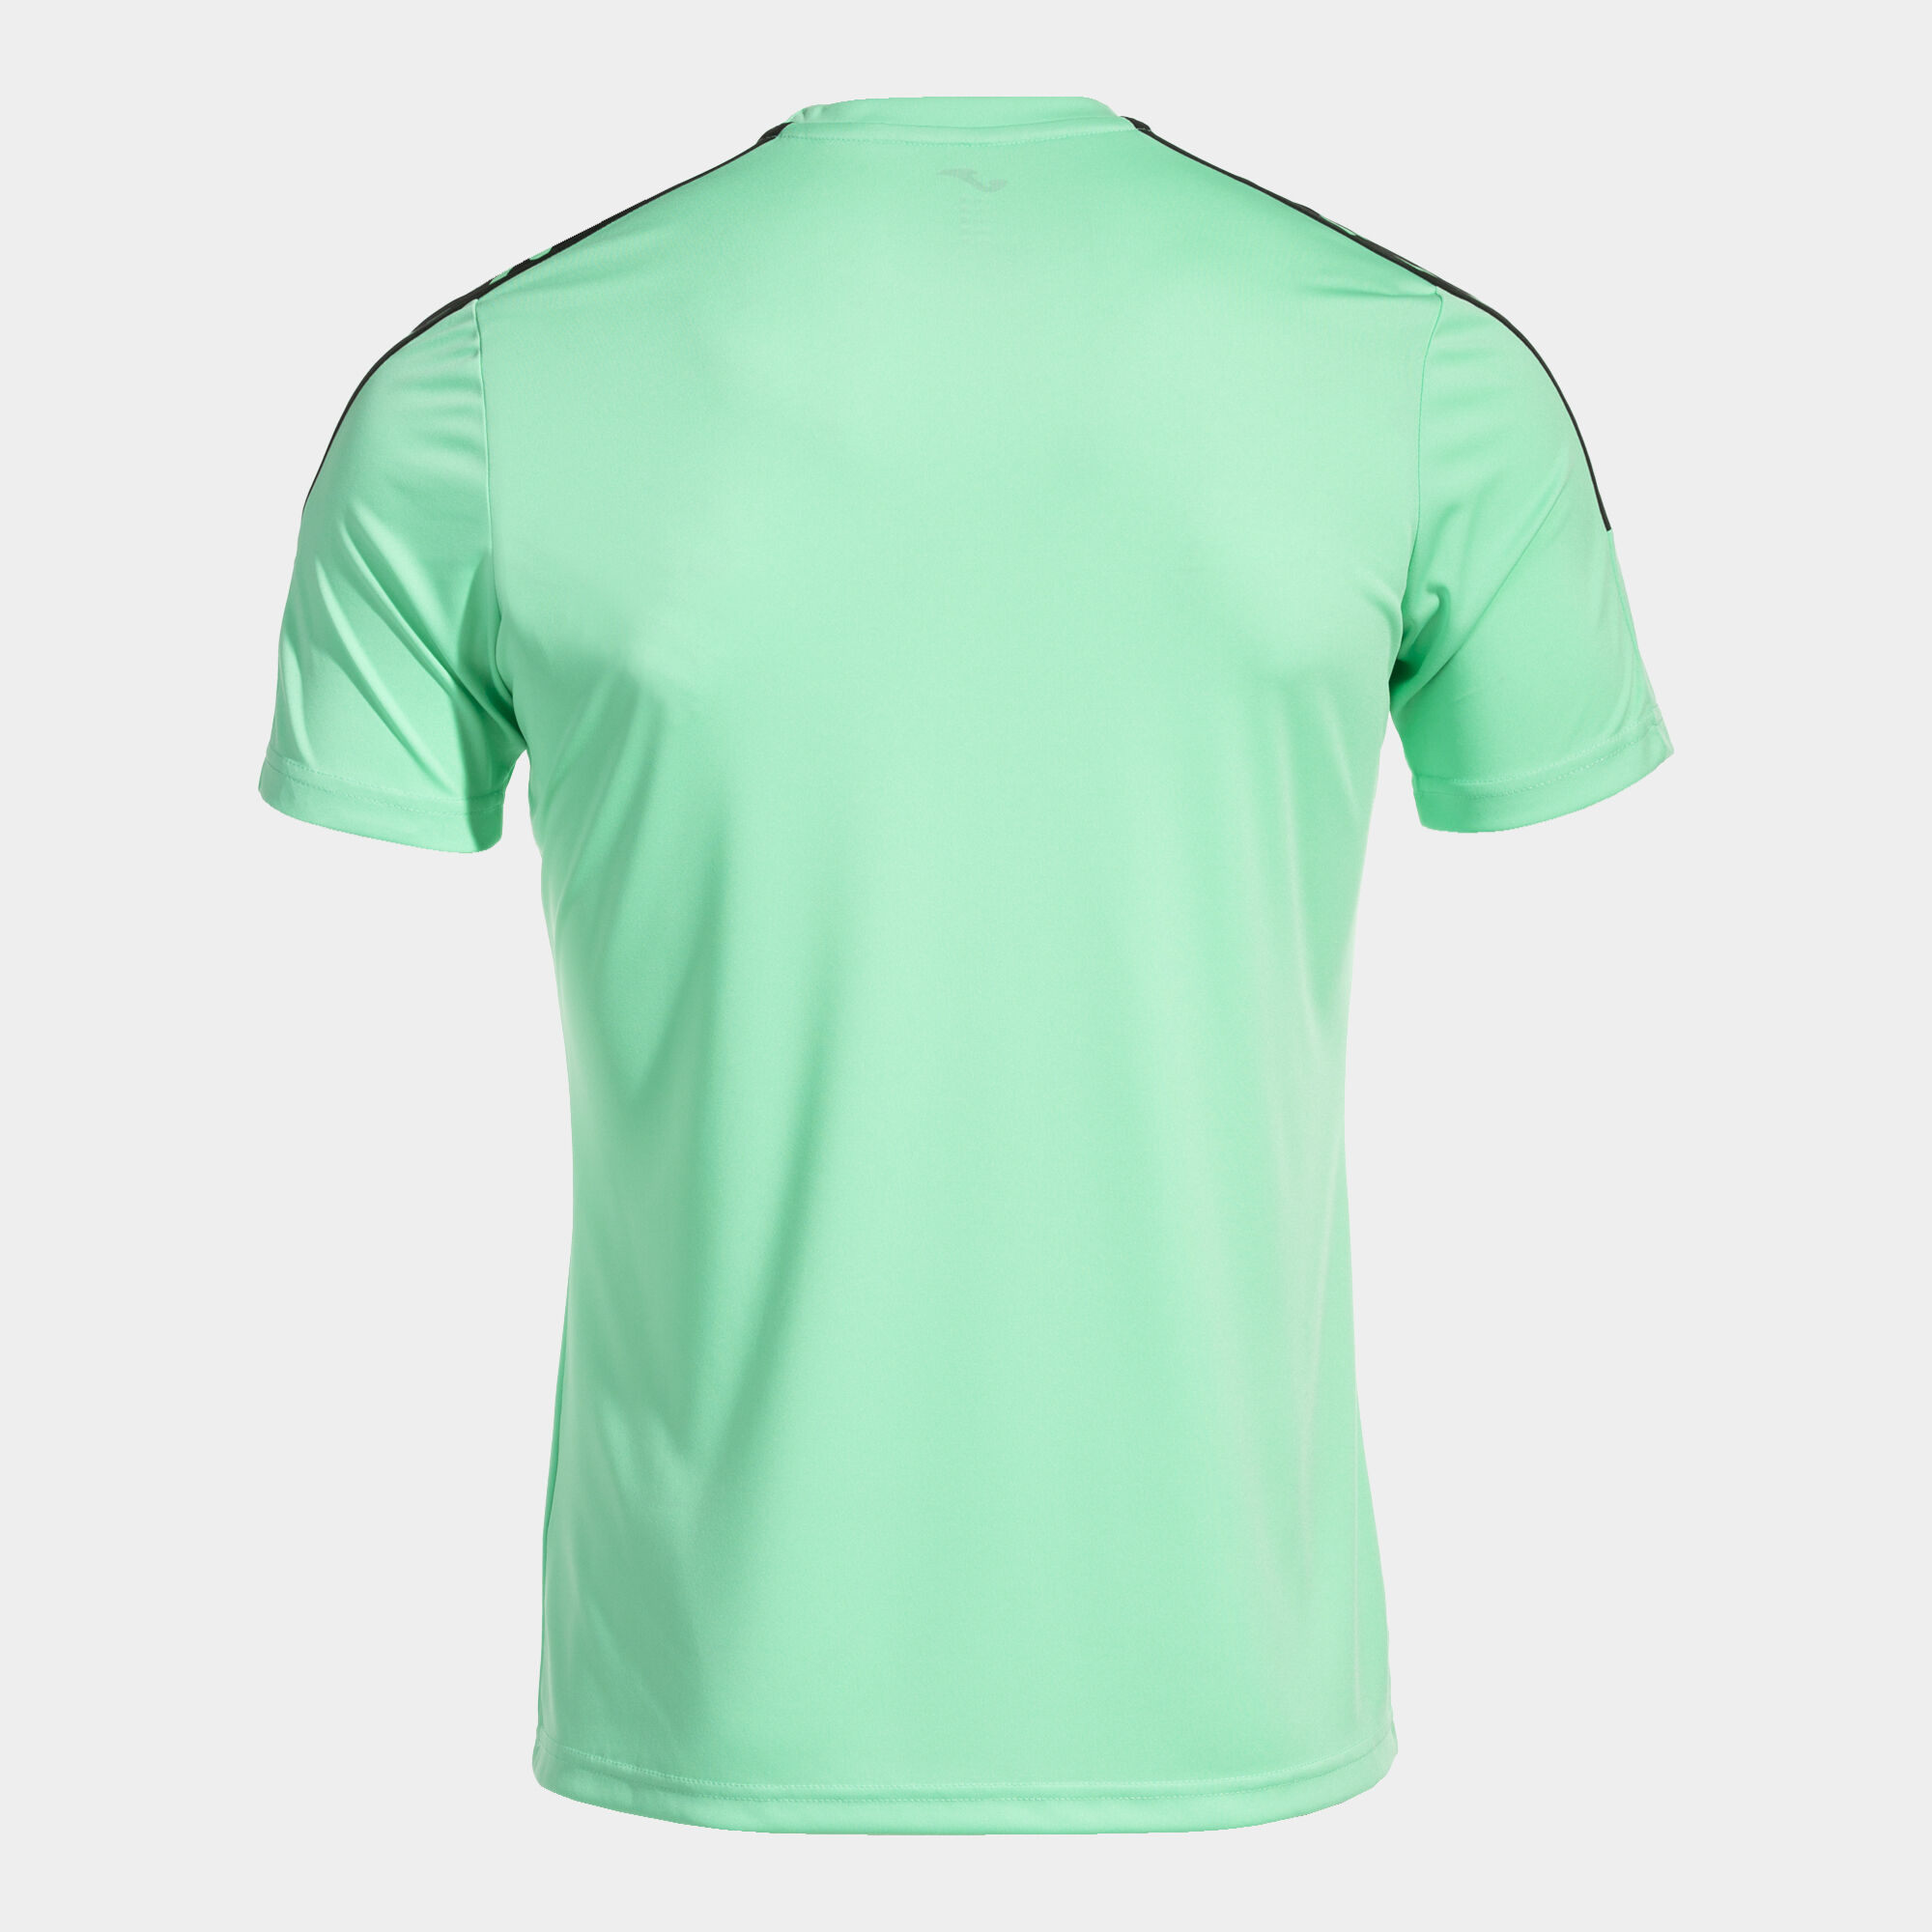 Camiseta manga corta hombre Olimpiada verde negro